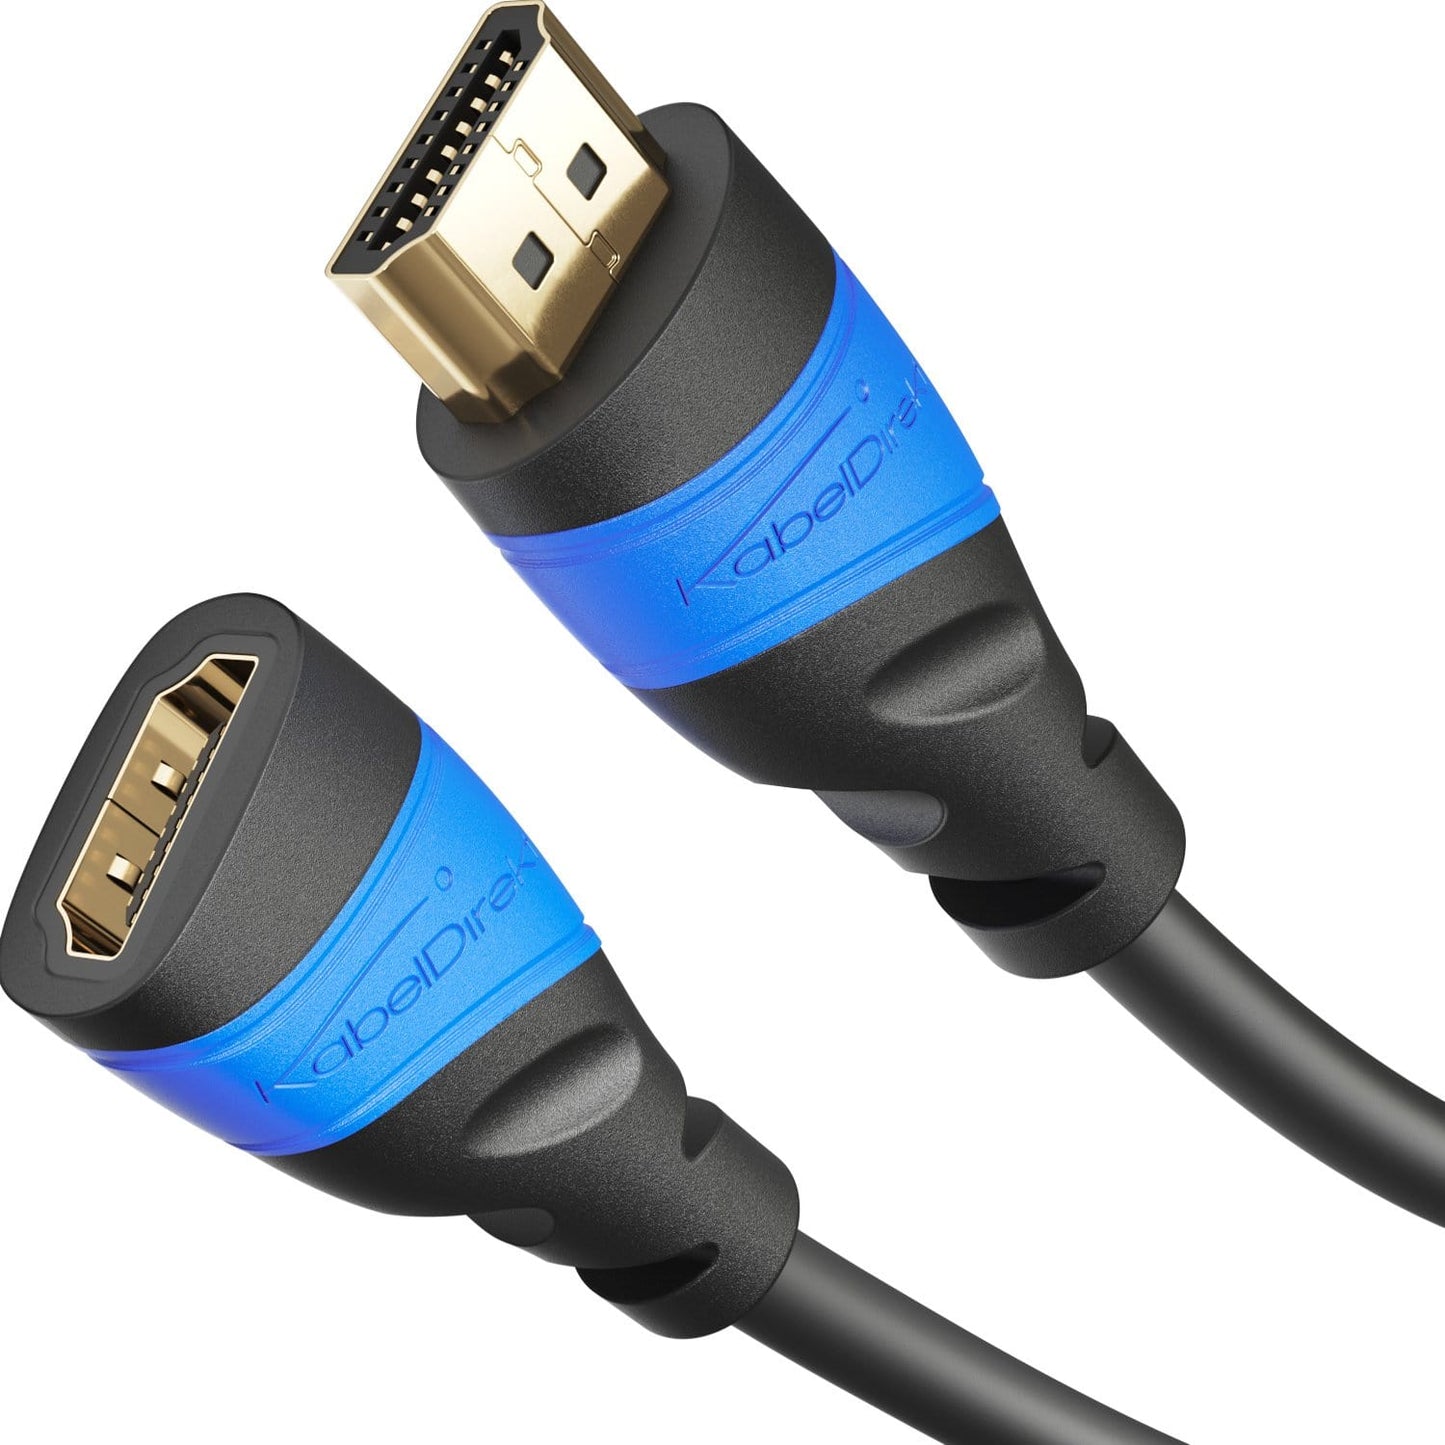 Câble HDMI pour 3D et 4K, compatible Ethernet, 1m à 10m